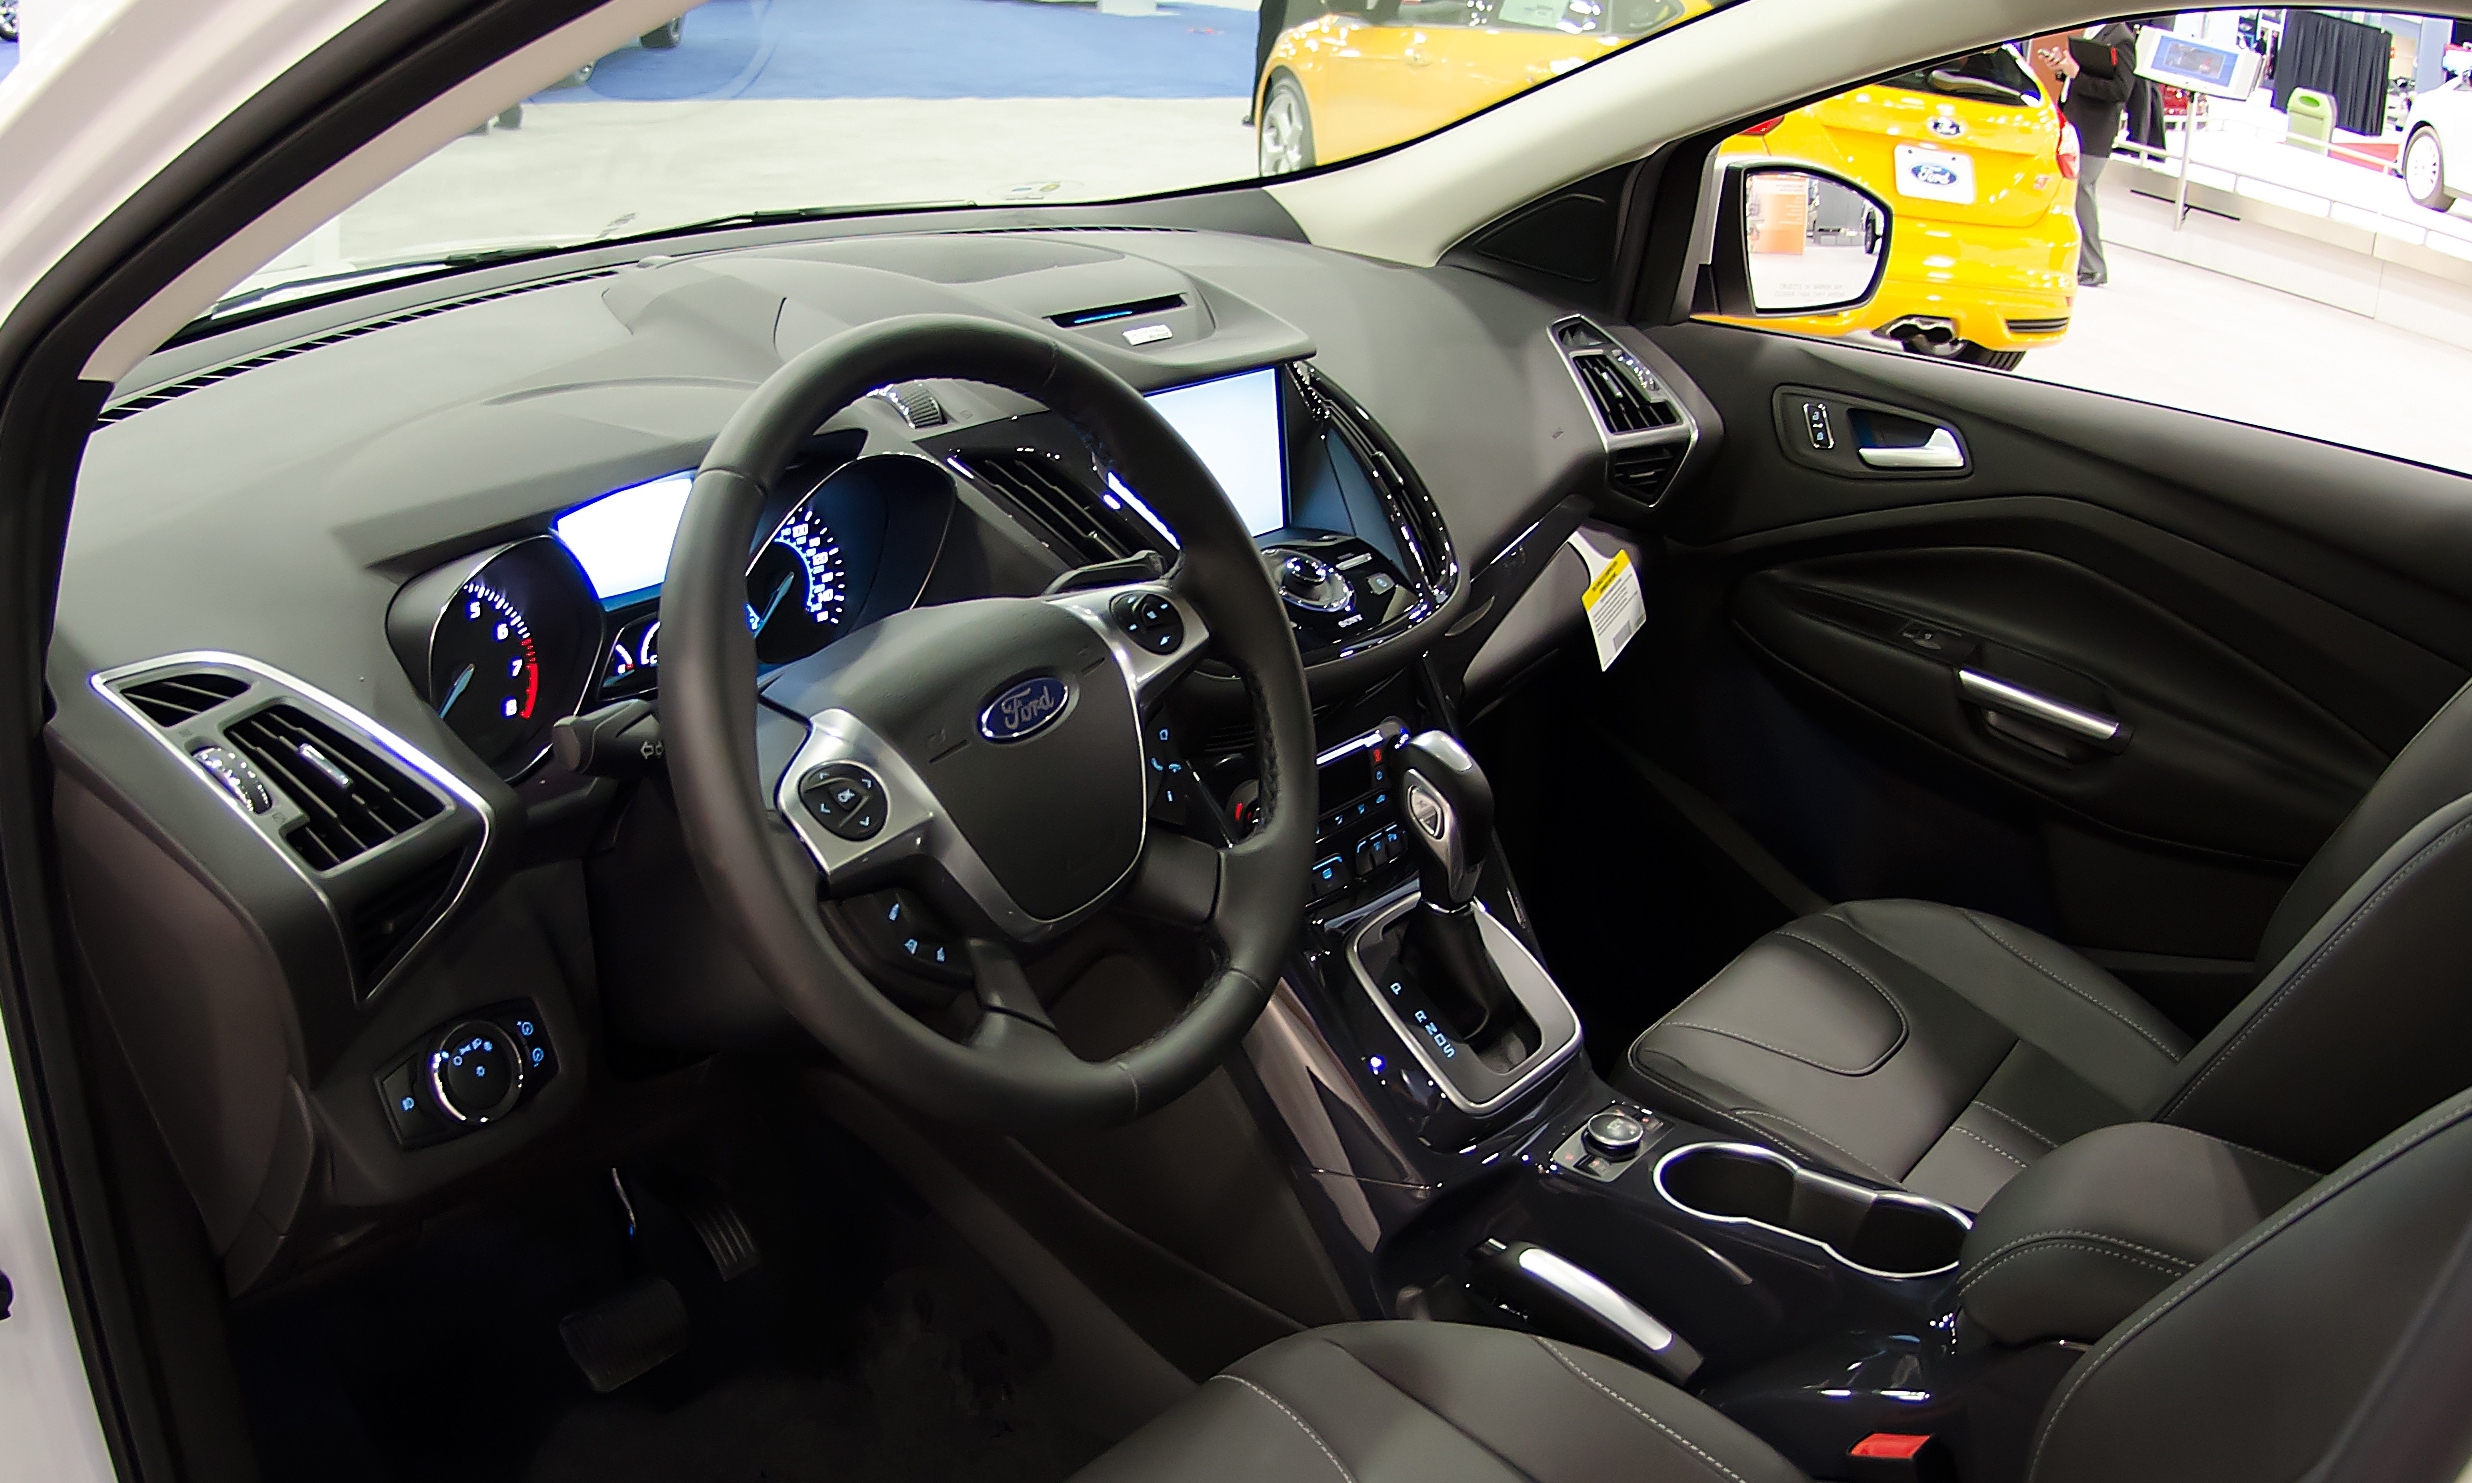 File:2013 Ford Escape interior shot (cropped).jpg - Wikipedia